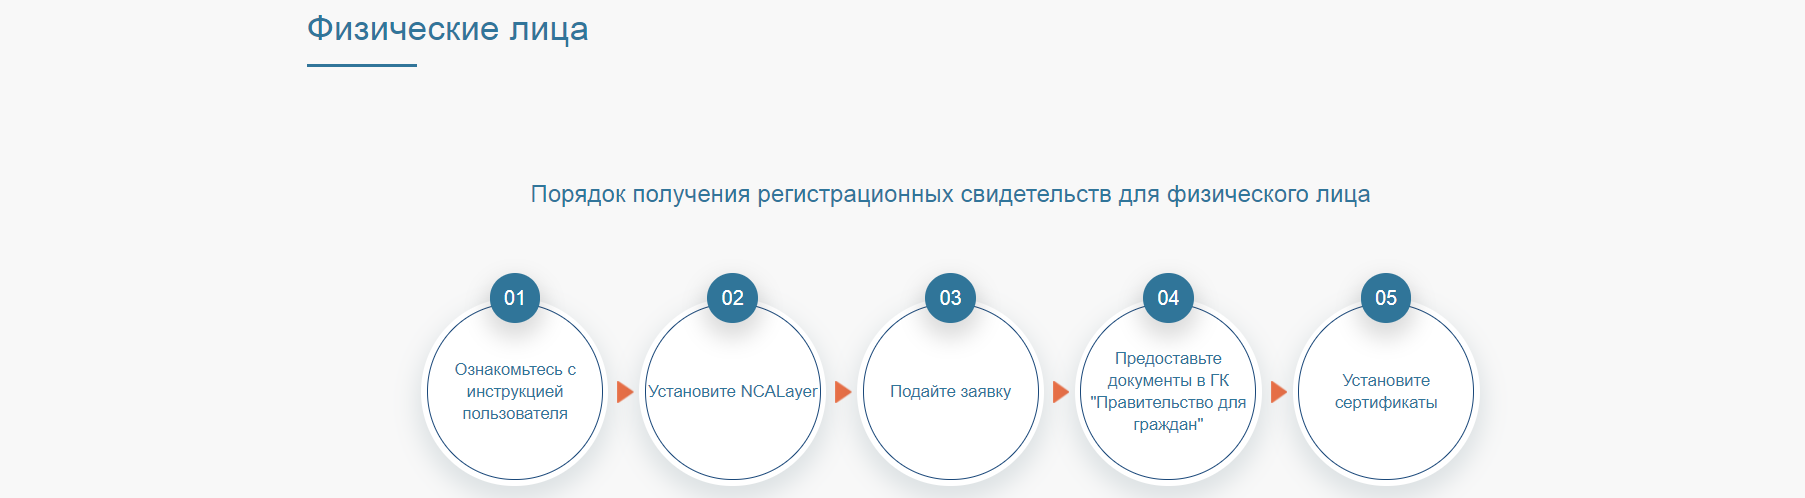 Национальный удостоверяющий центр республики. Государственная база данных физических лиц Казахстана.